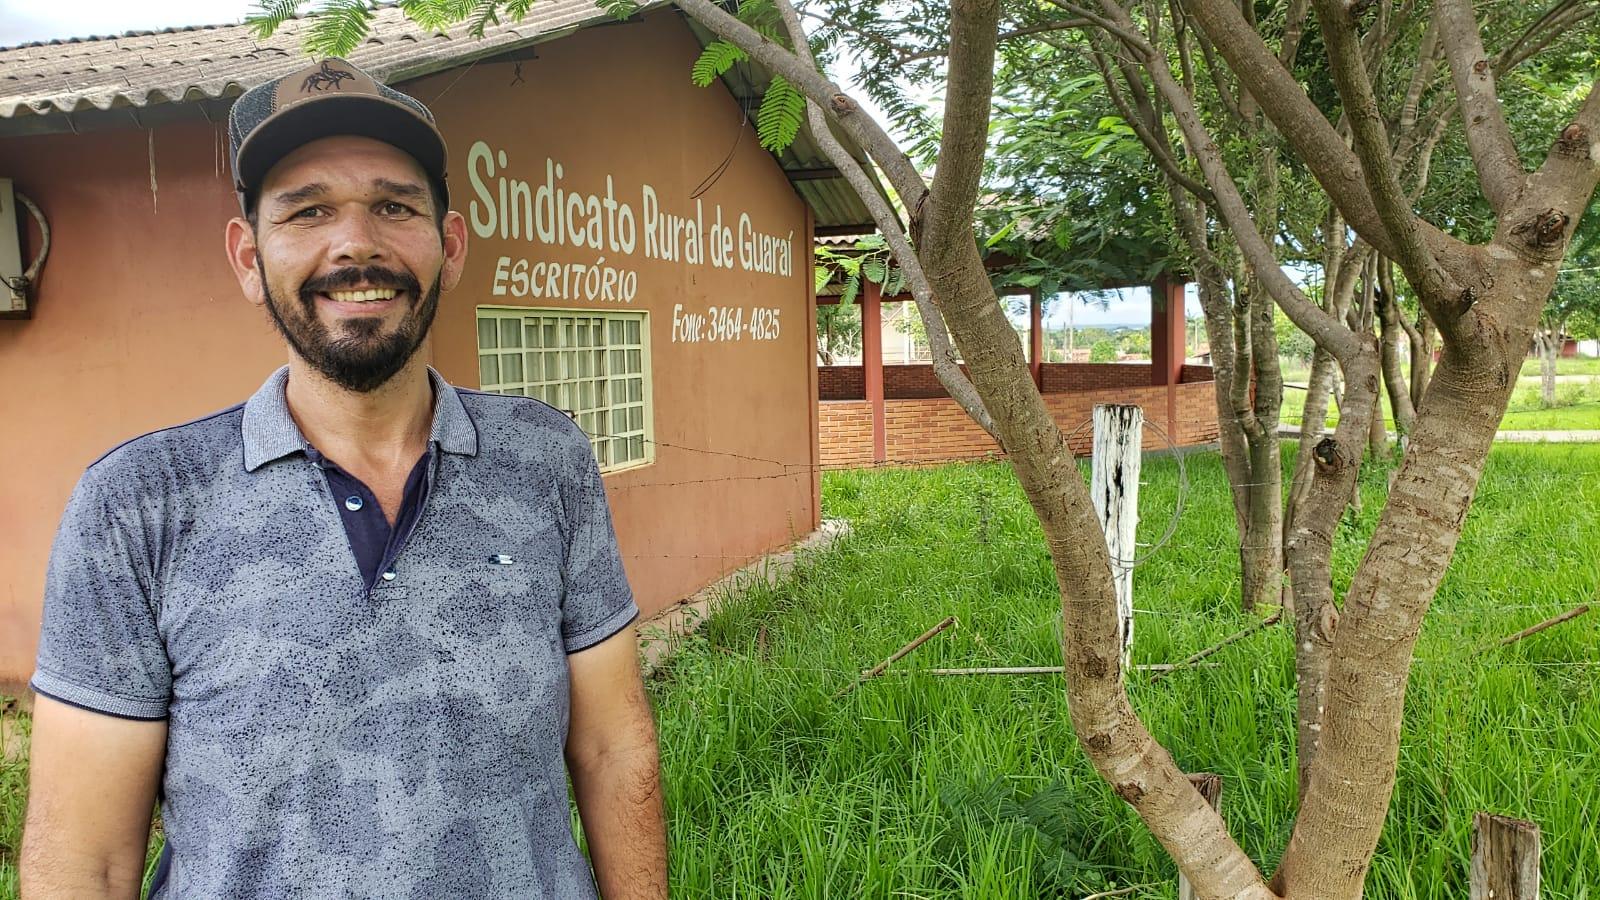 Sindicato Rural de Guaraí tem novo presidente, o empresário e pecuarista “Adriano do Divinão”